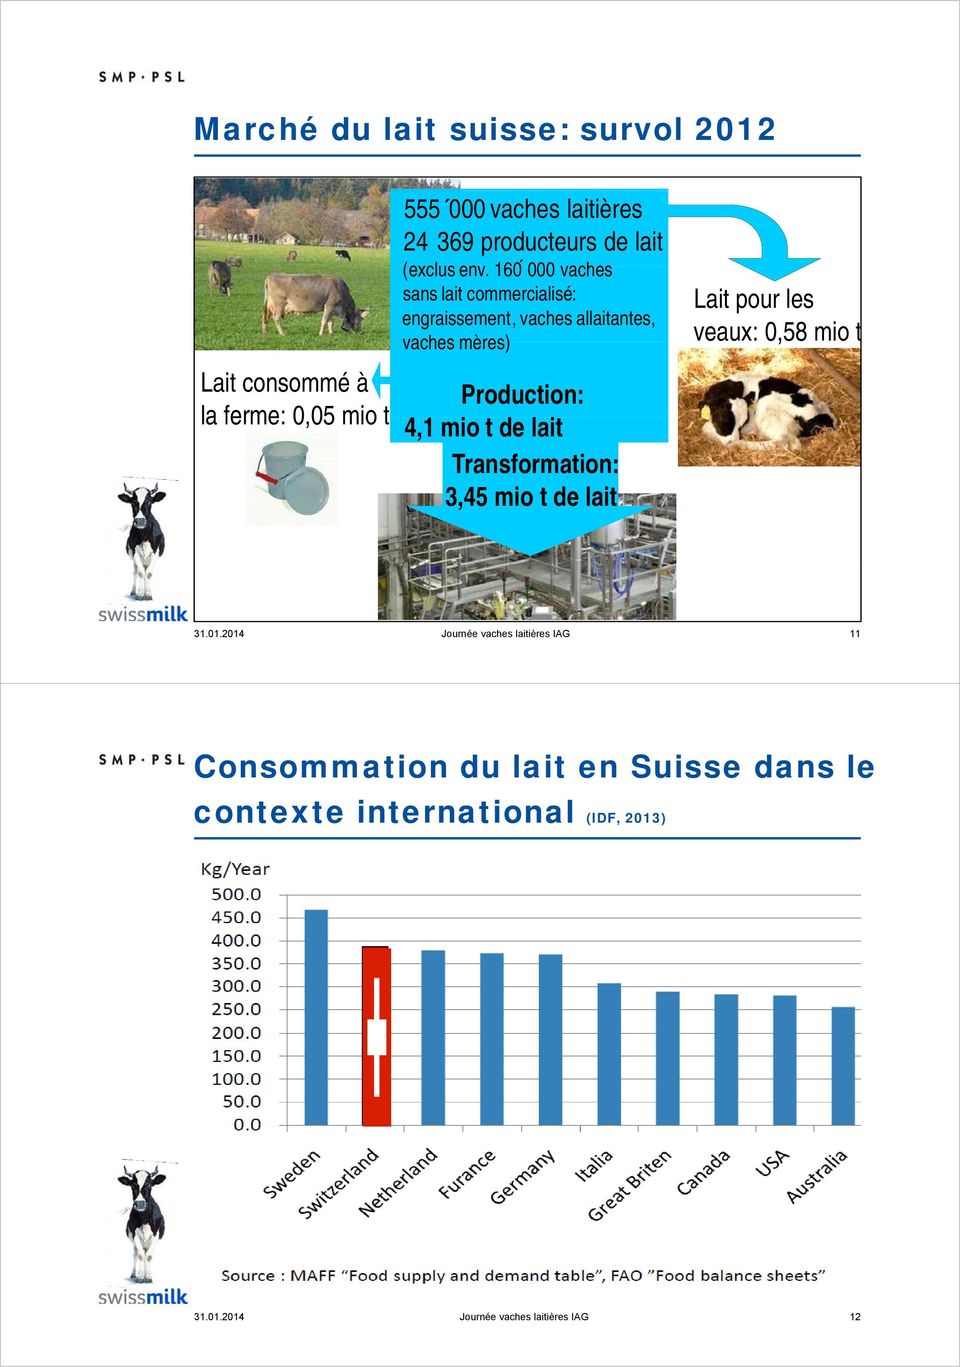 160 000 vaches sans lait commercialisé: engraissement, vaches allaitantes, vaches mères), Production: 41 4,1 mio t de lait